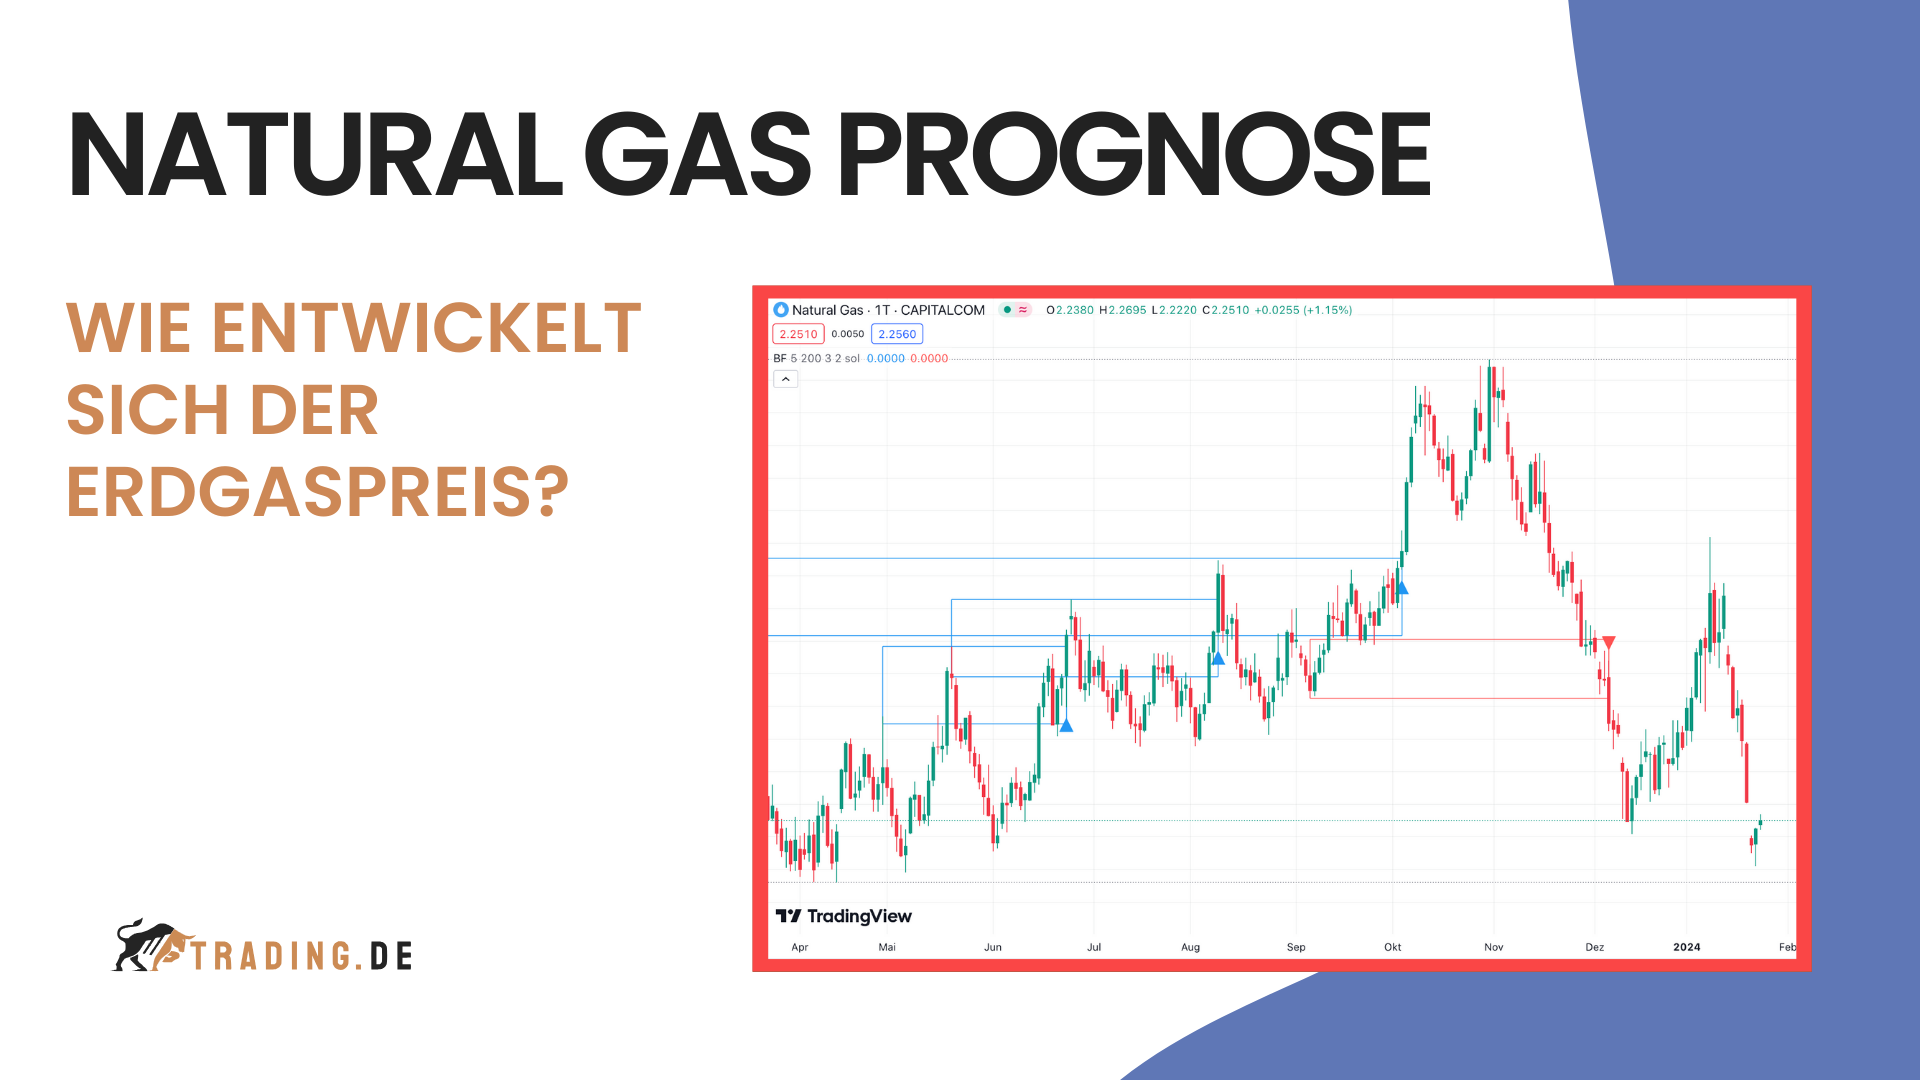 NATURAL GAS PROGNOSE